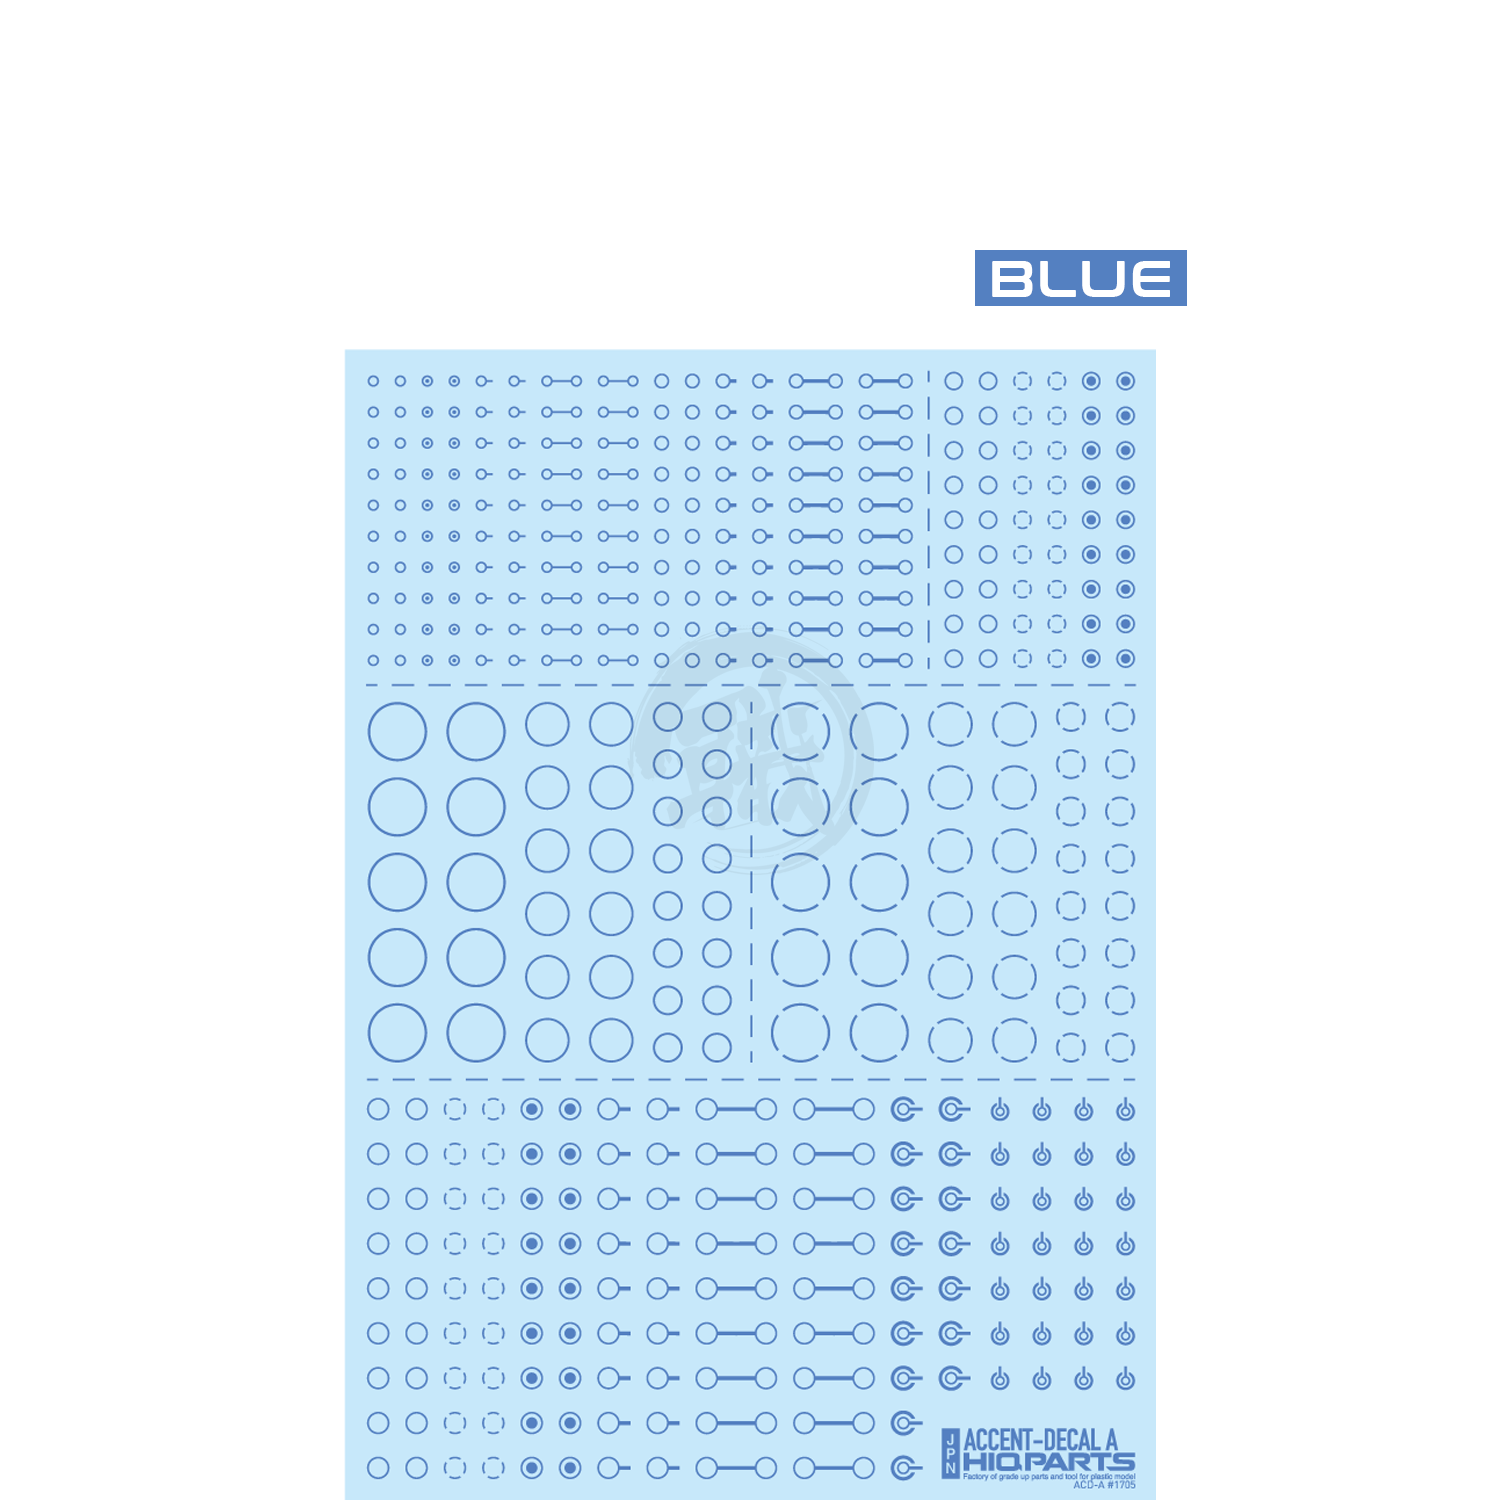 HIQParts - Accent Decal A [Blue] - ShokuninGunpla